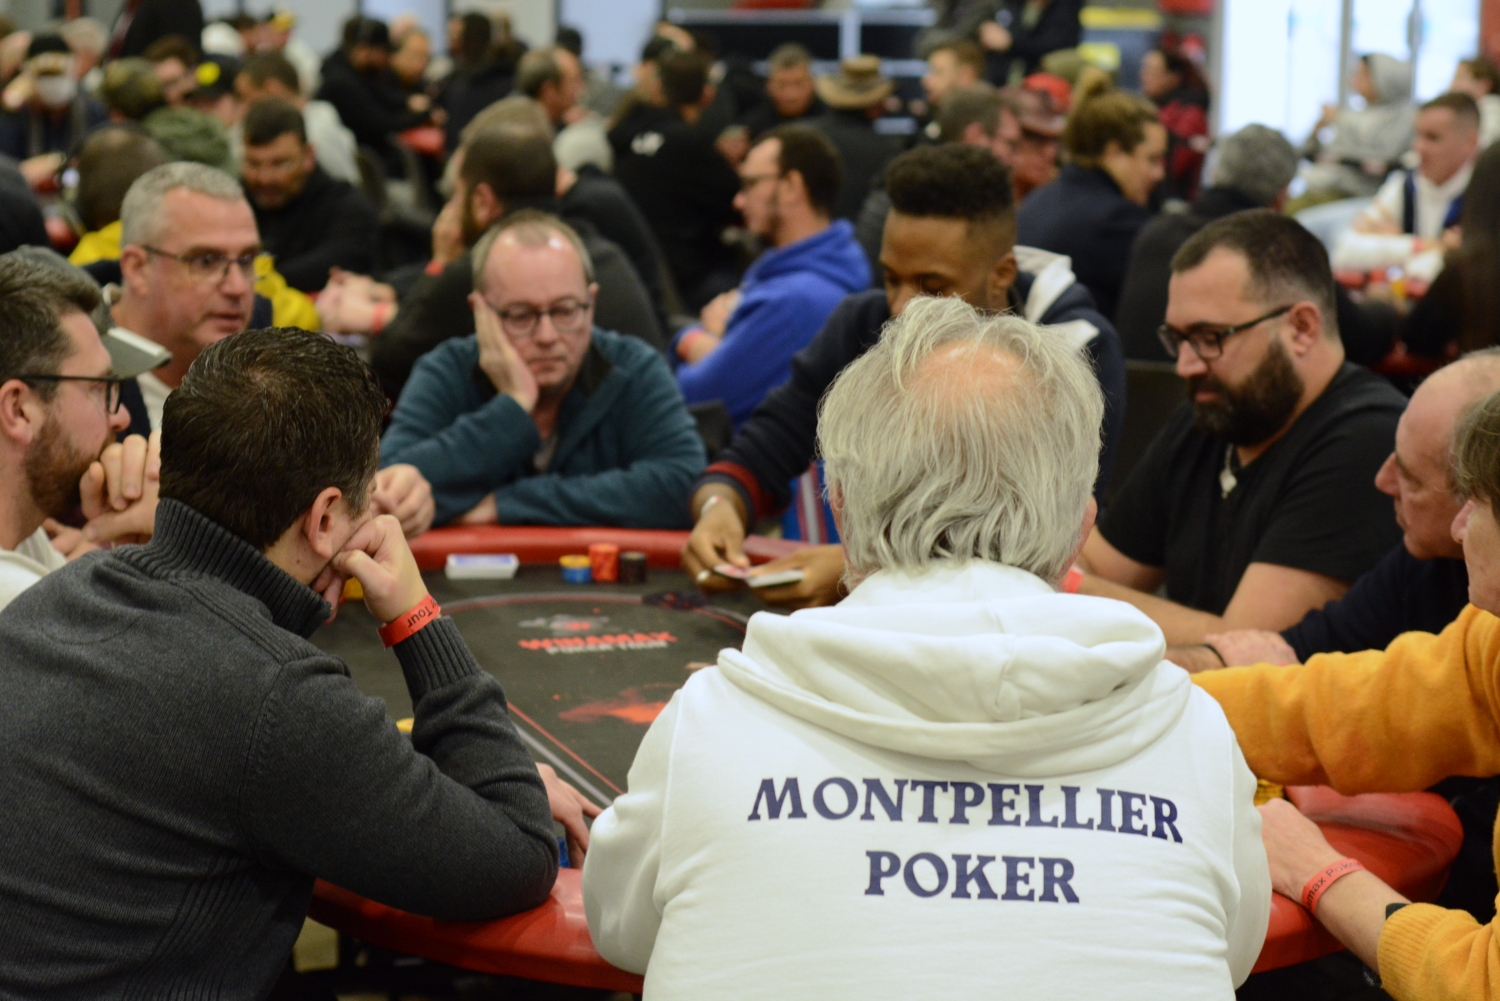 Montpellier Poker Club